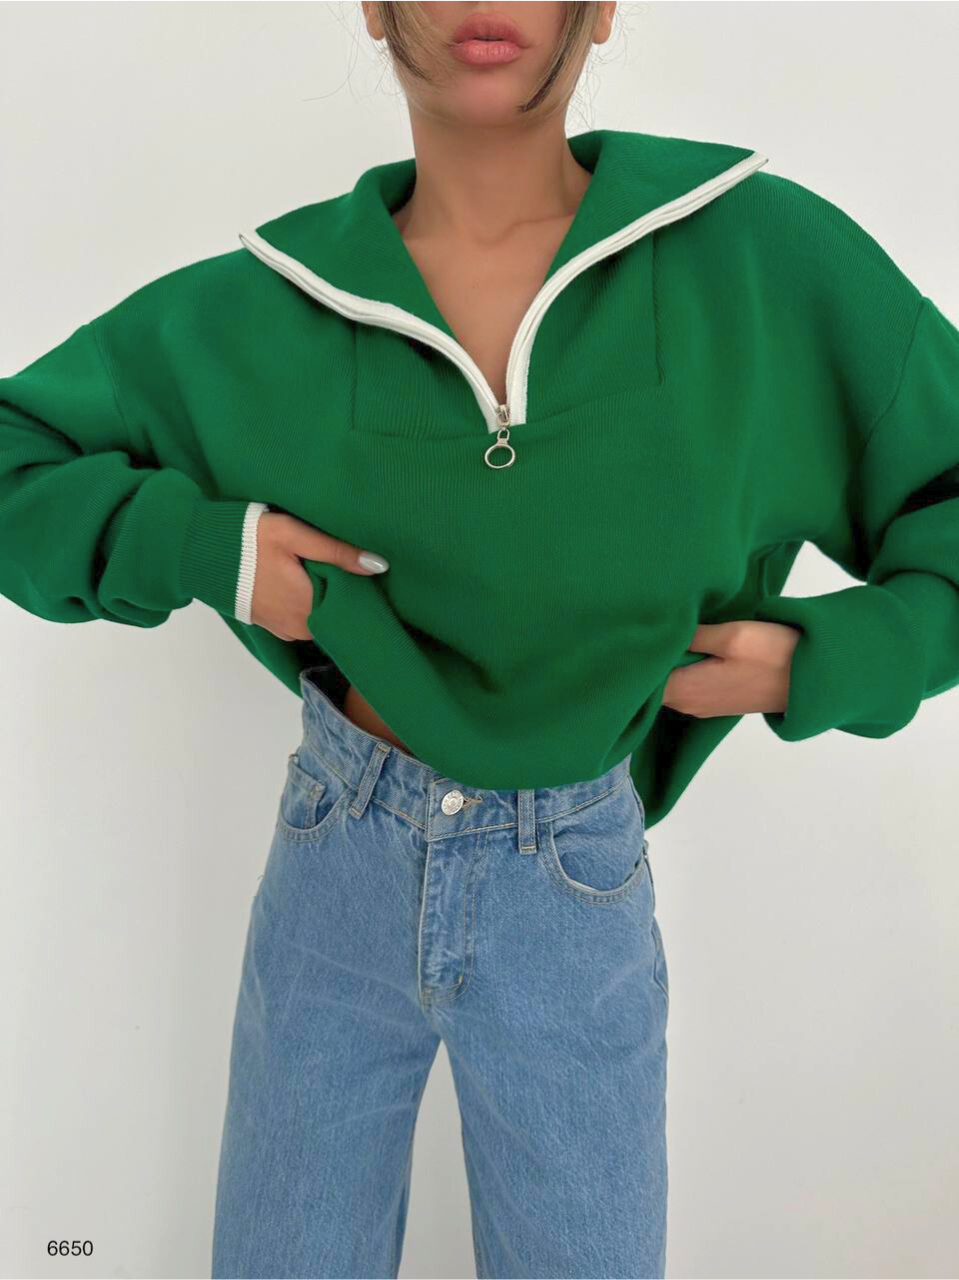 Collar Sweater in Green - Noxlook.